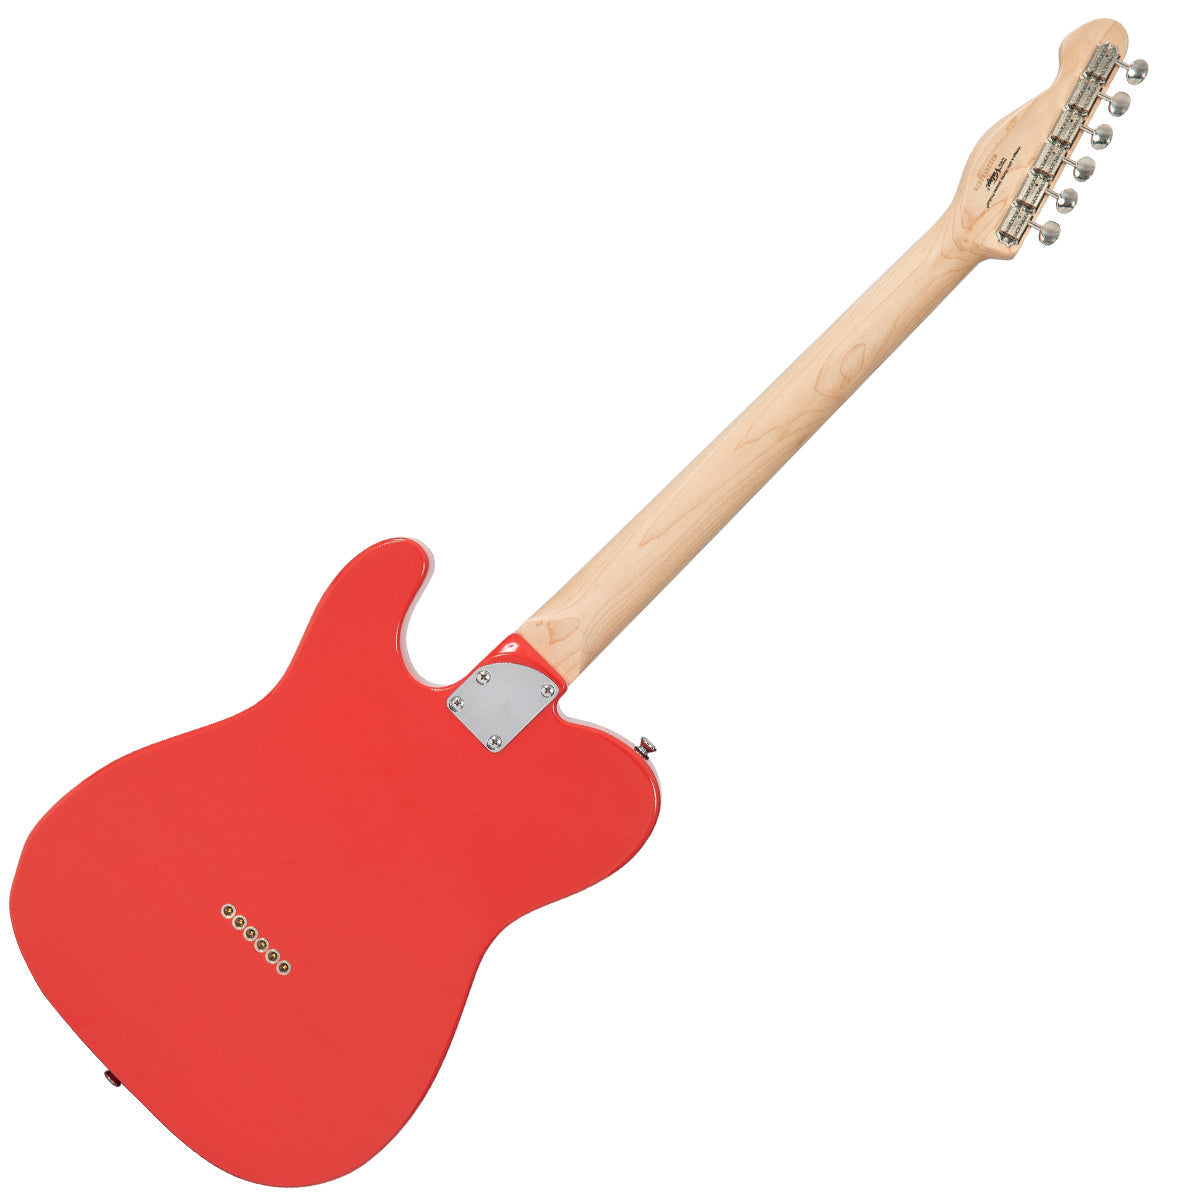 Vintage V72 ReIssued Electric Guitar ~ Firenza Red, Electric Guitar for sale at Richards Guitars.